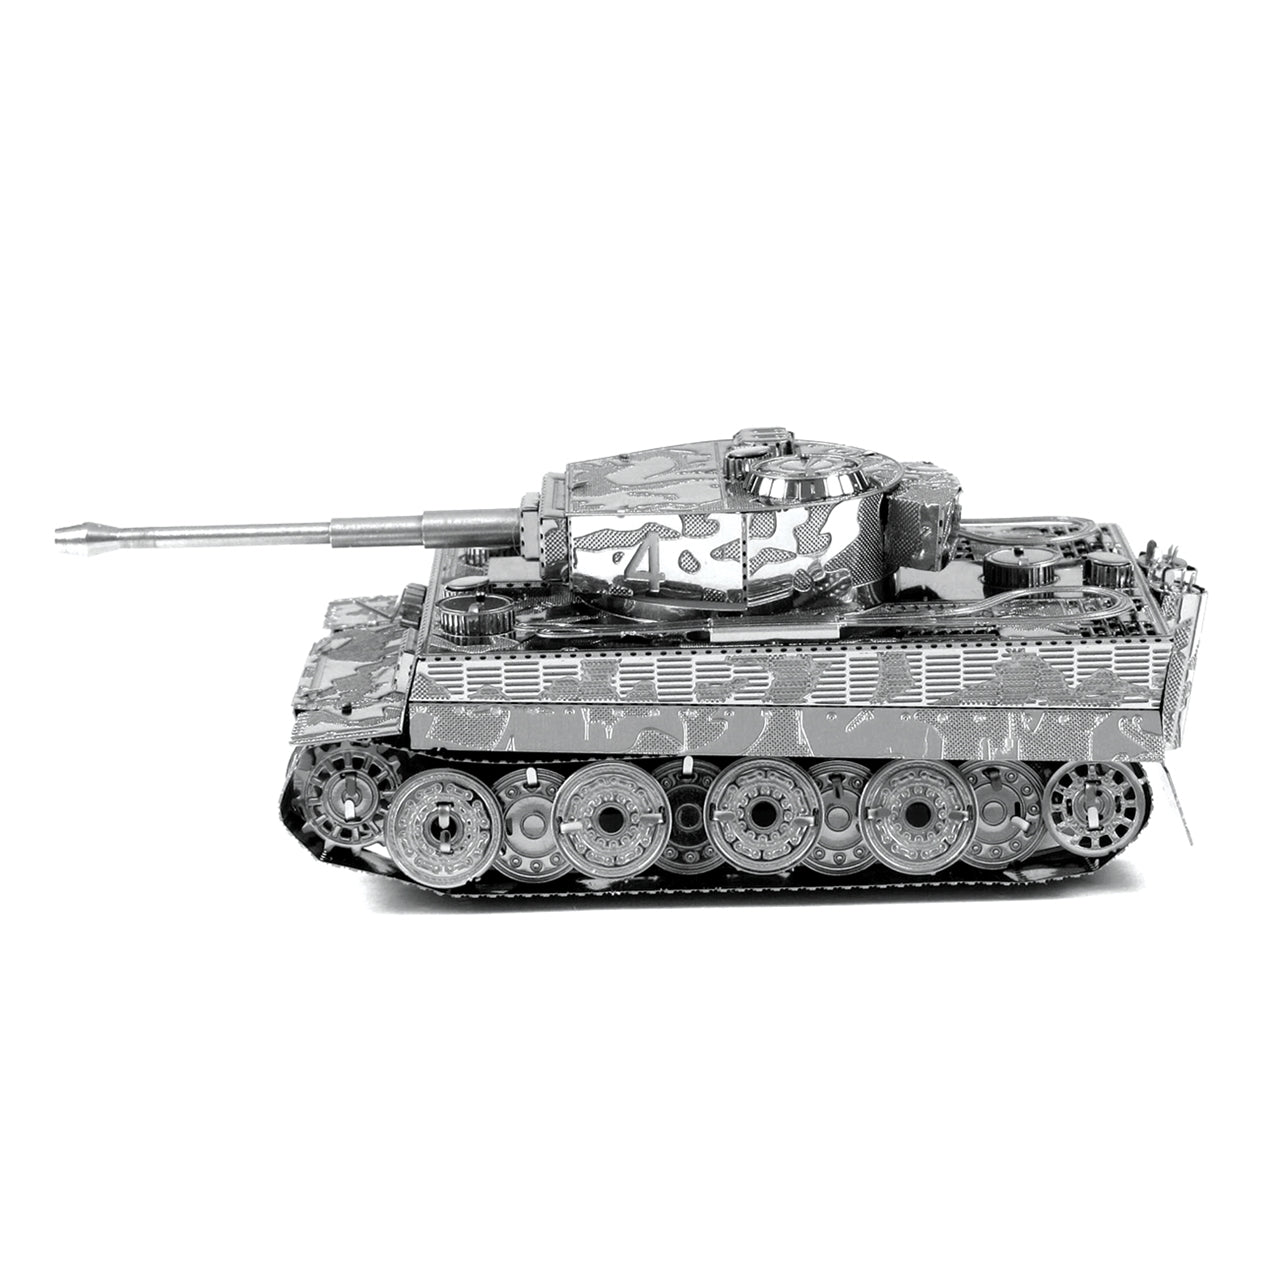 FMW203 टाइगर I टैंक (बनाने योग्य) (बंद मॉडल)